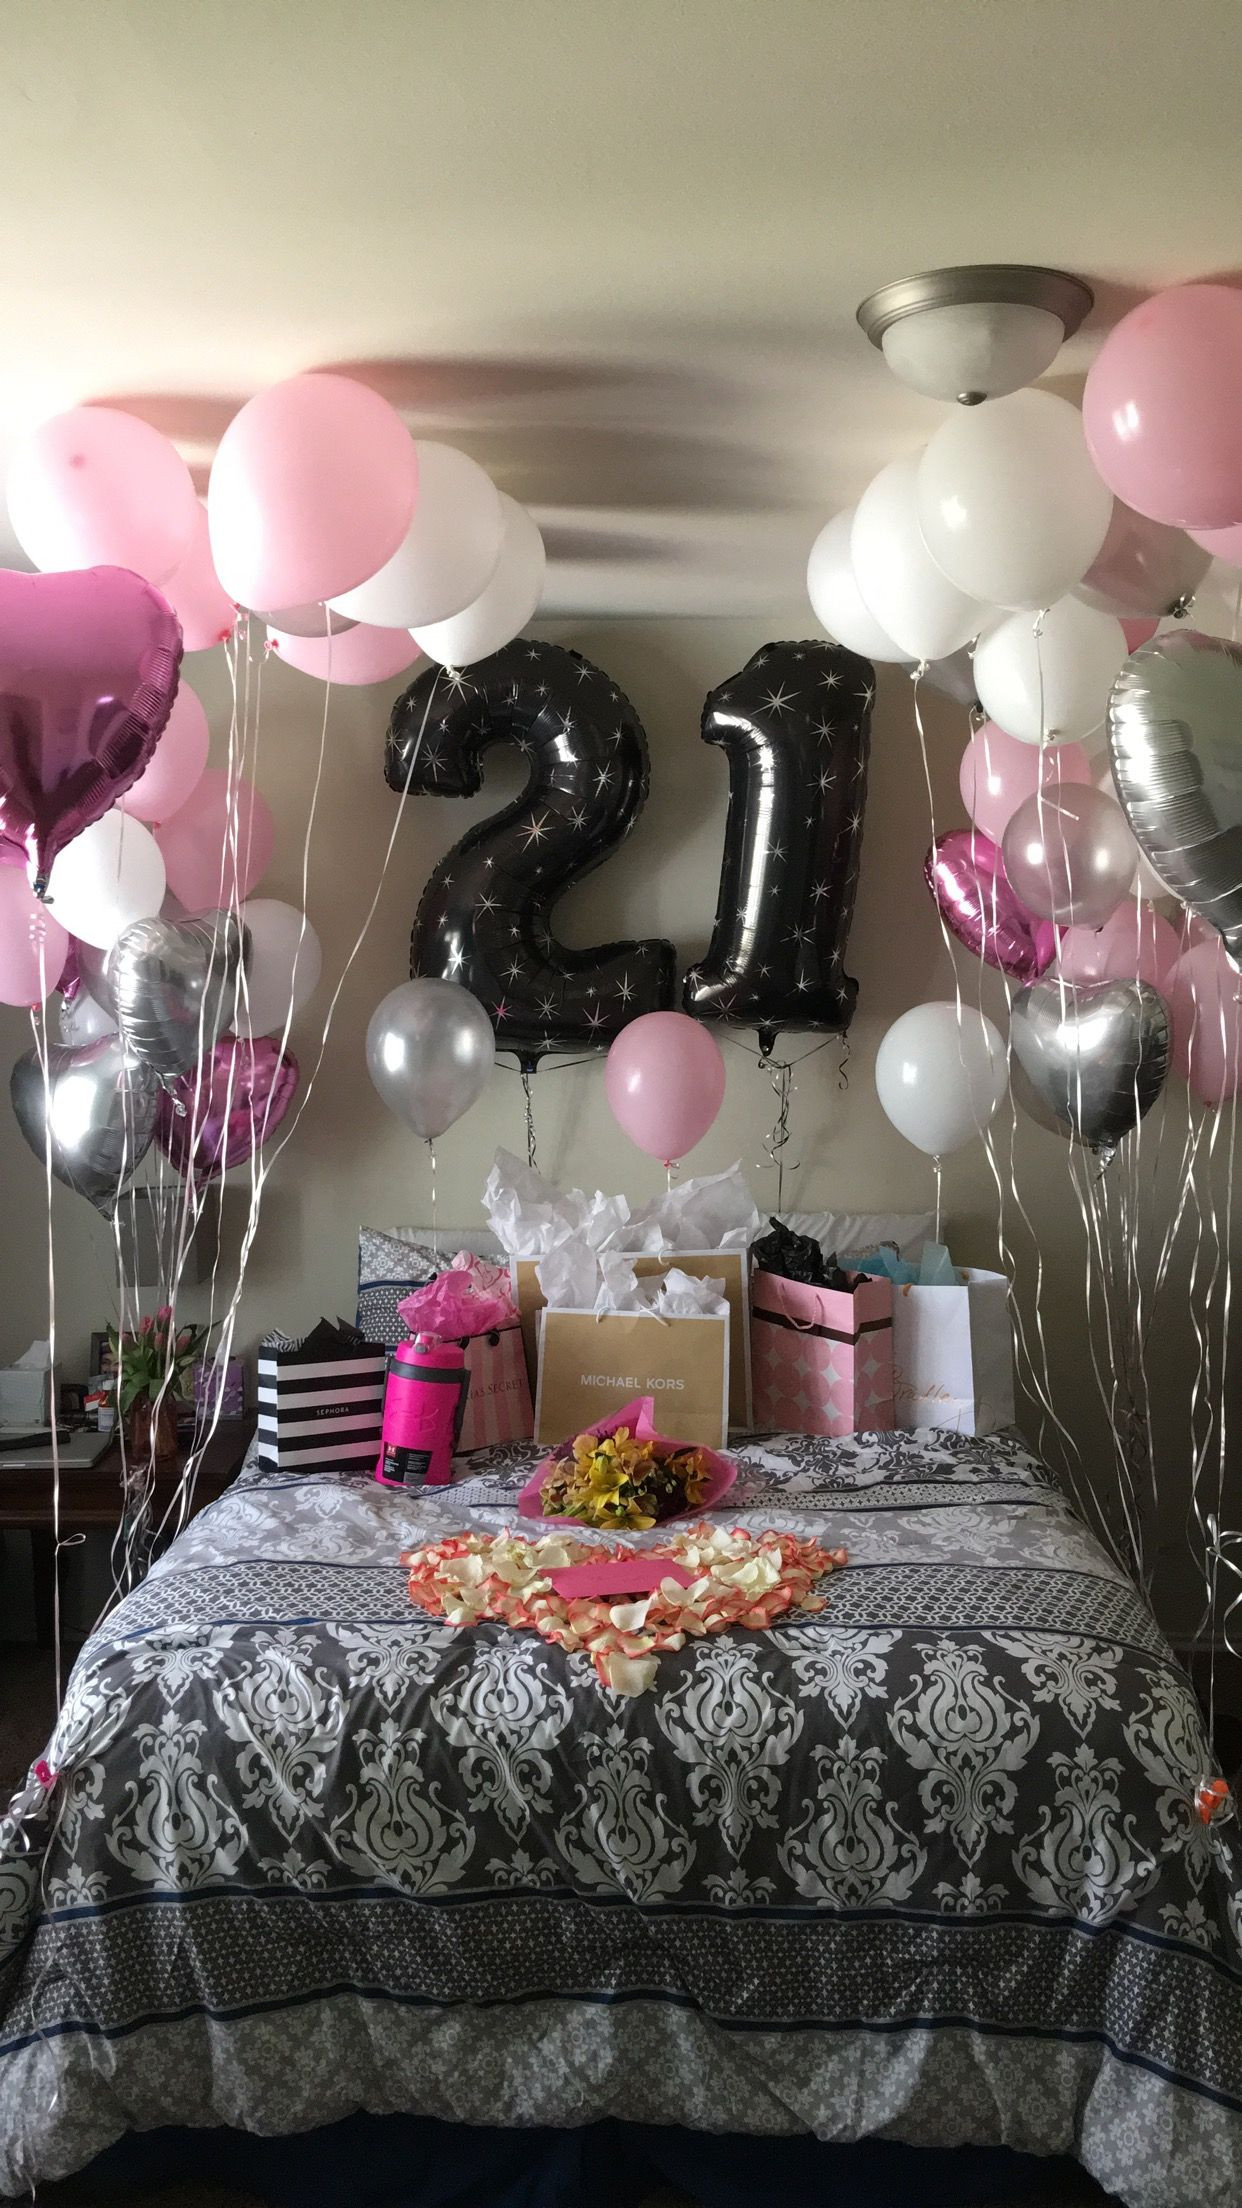 21St Birthday Gift Ideas For Girlfriend
 21st Birthday surprise